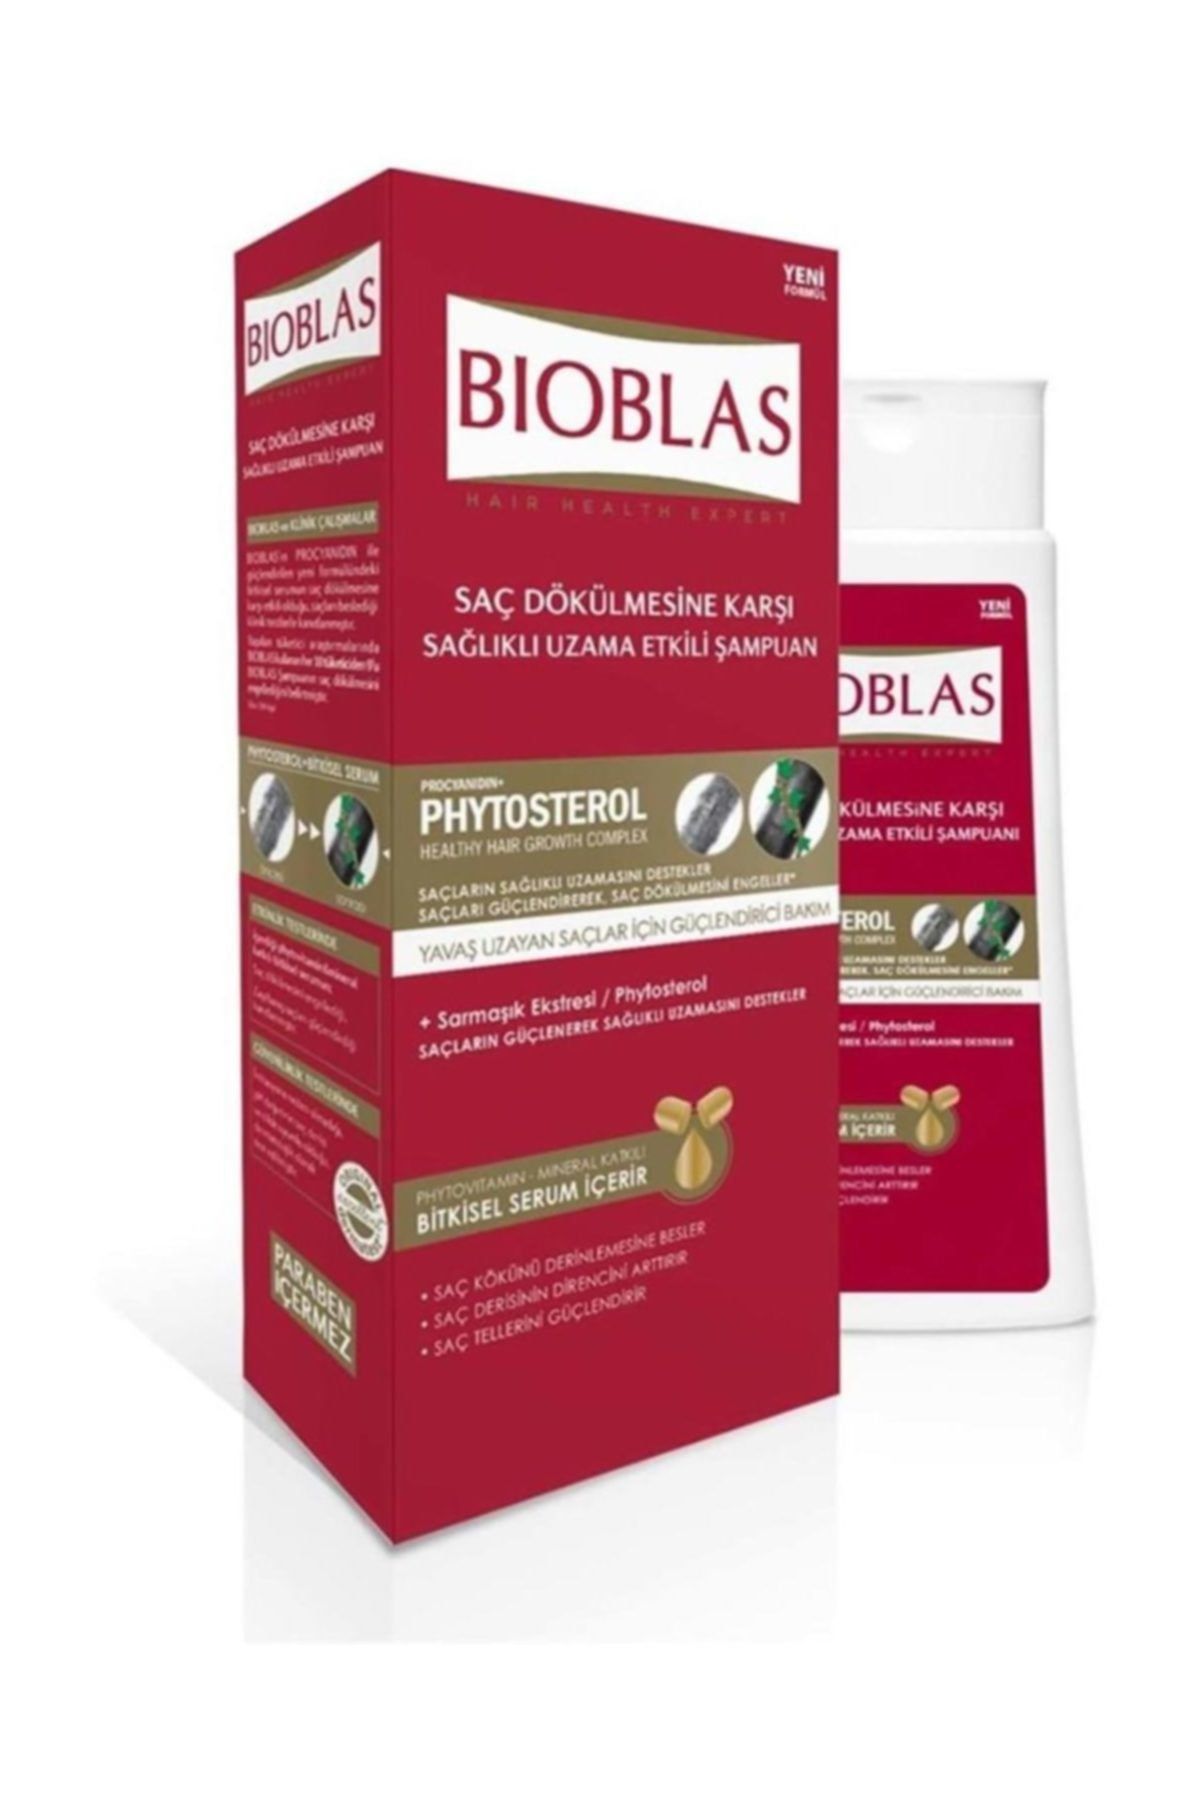 Bioblas Sağlıkla Uzama Şampuanı 360ml Bıoblasphytoster